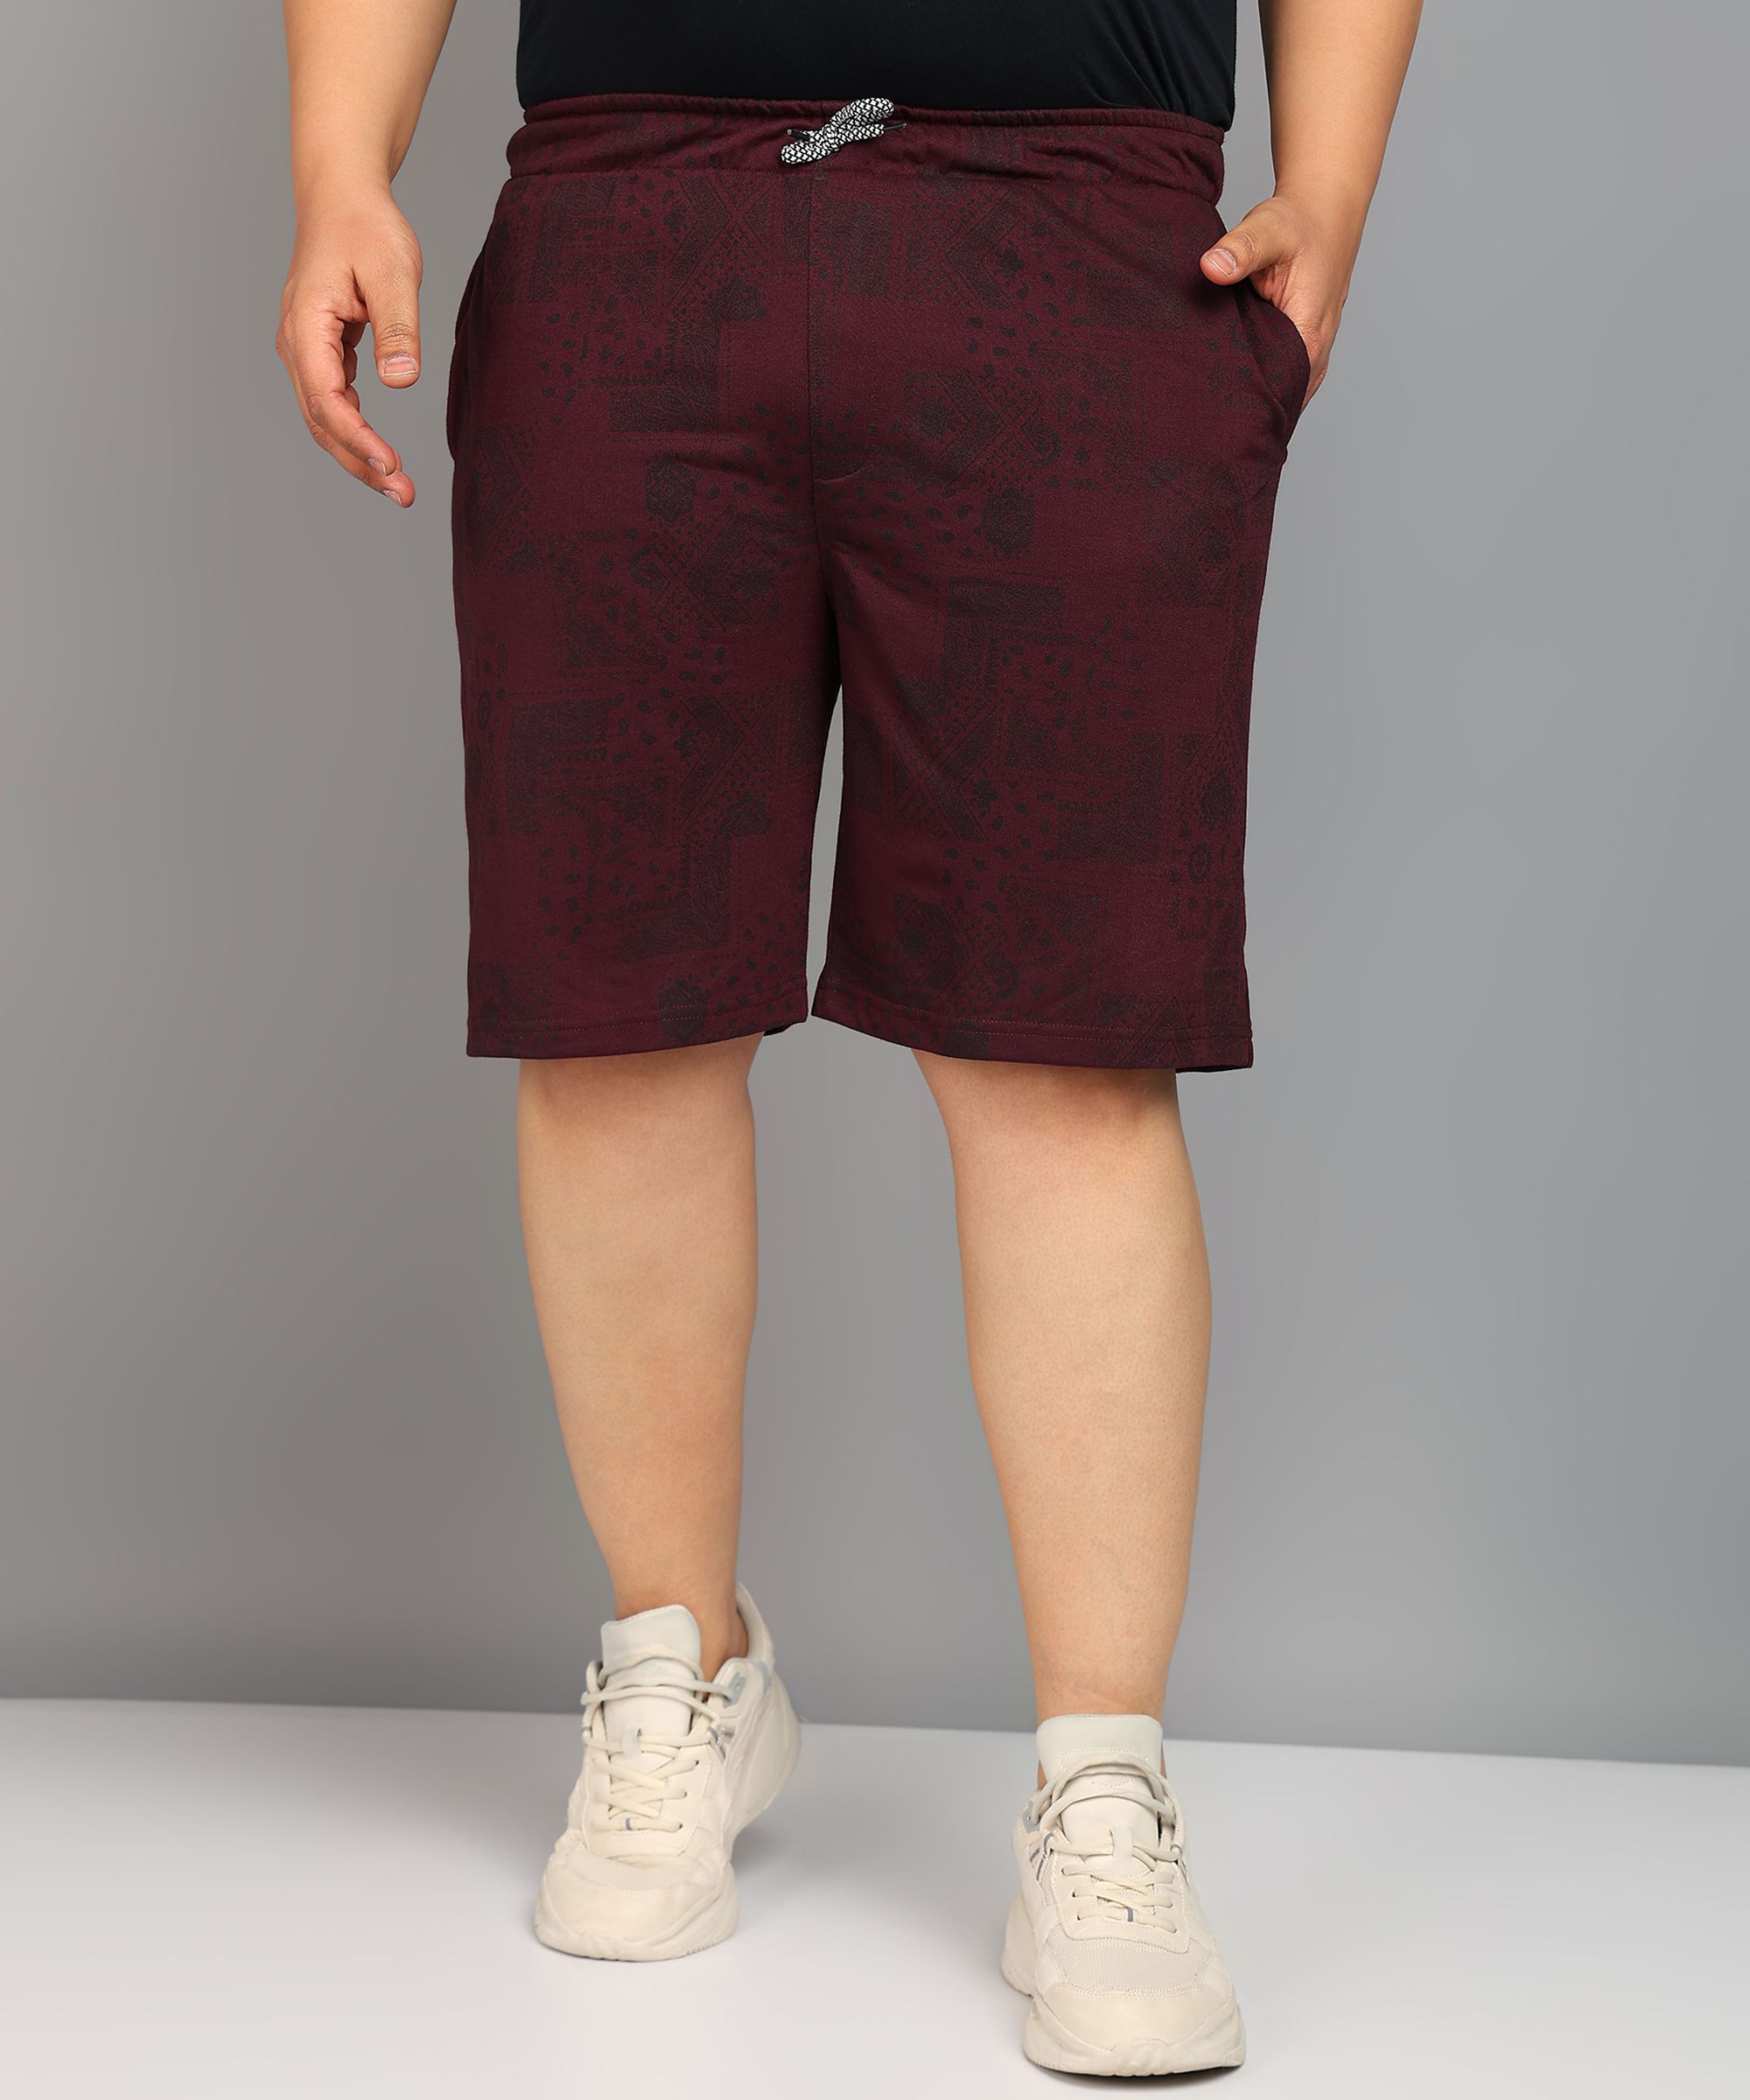     			XFOX Wine Blended Men's Shorts ( Pack of 1 )